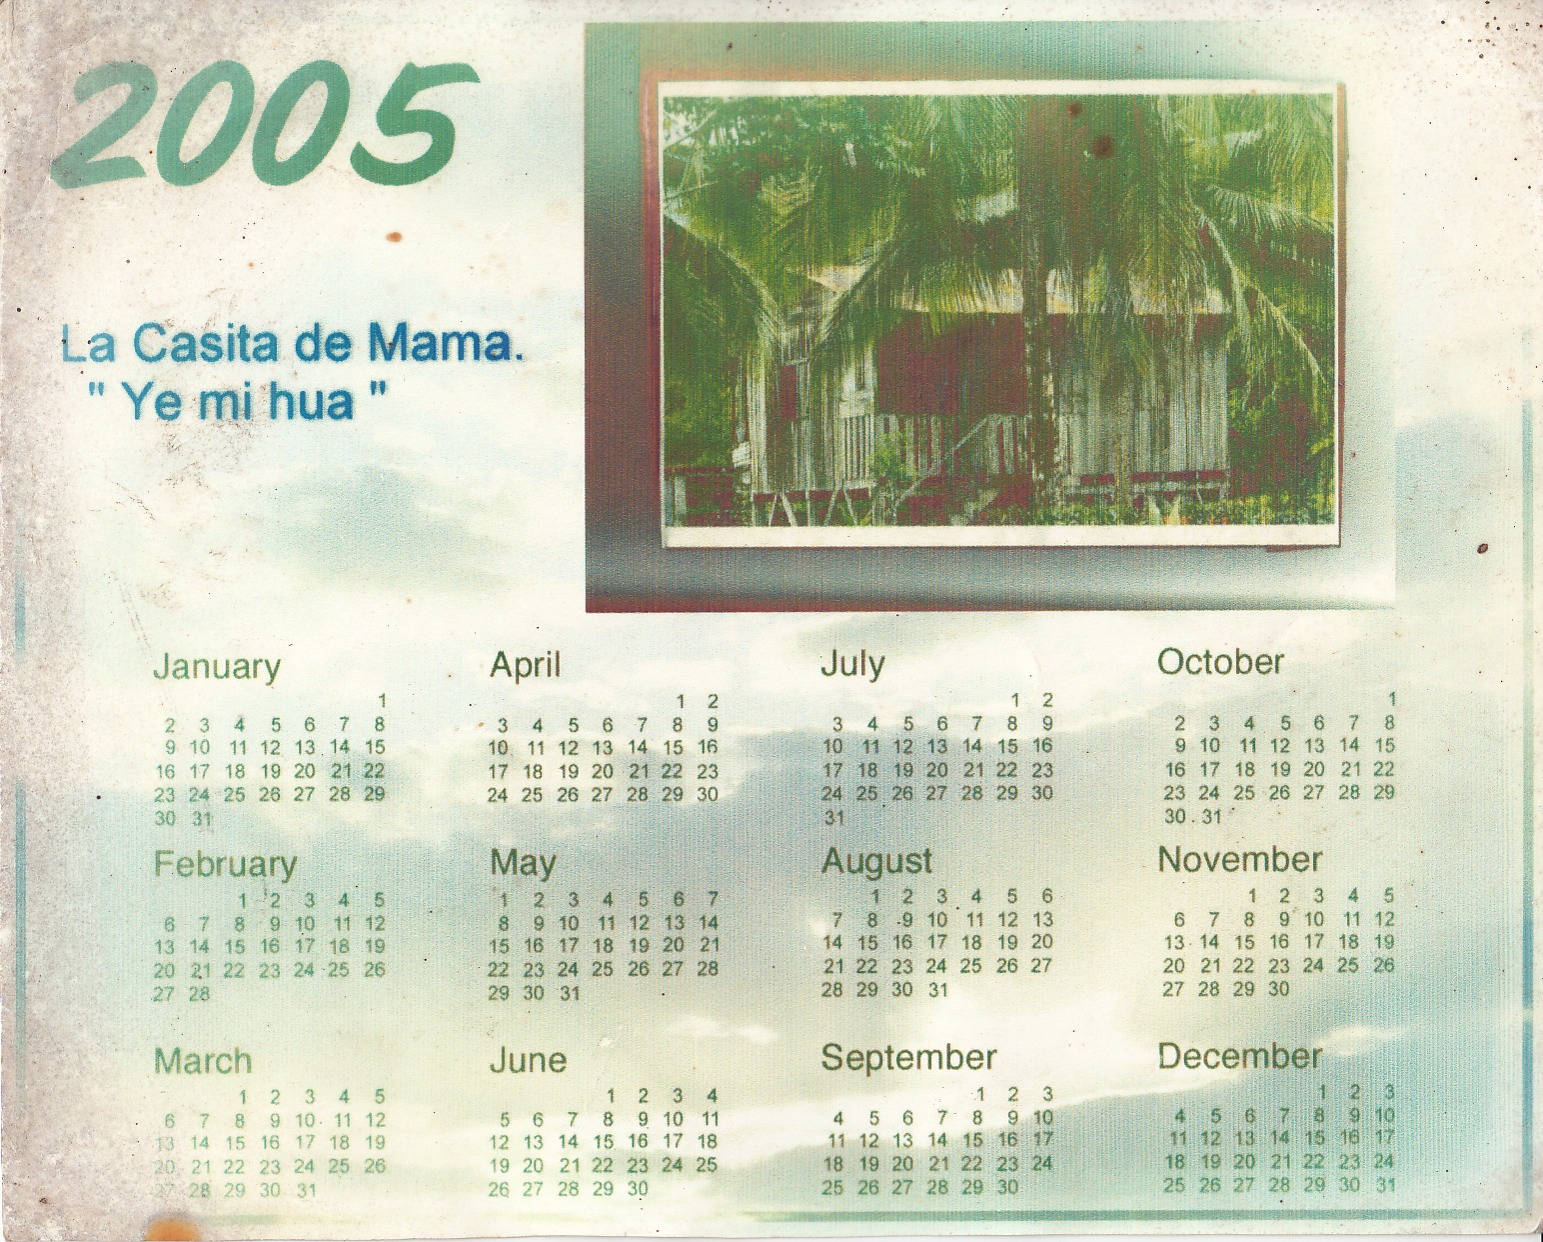   "Ye mi hua"   Playa Negra   1990   Casas tradicionales Caribeñas     Colaborador: Mauricio Salazar Salazar  CC_001_013  